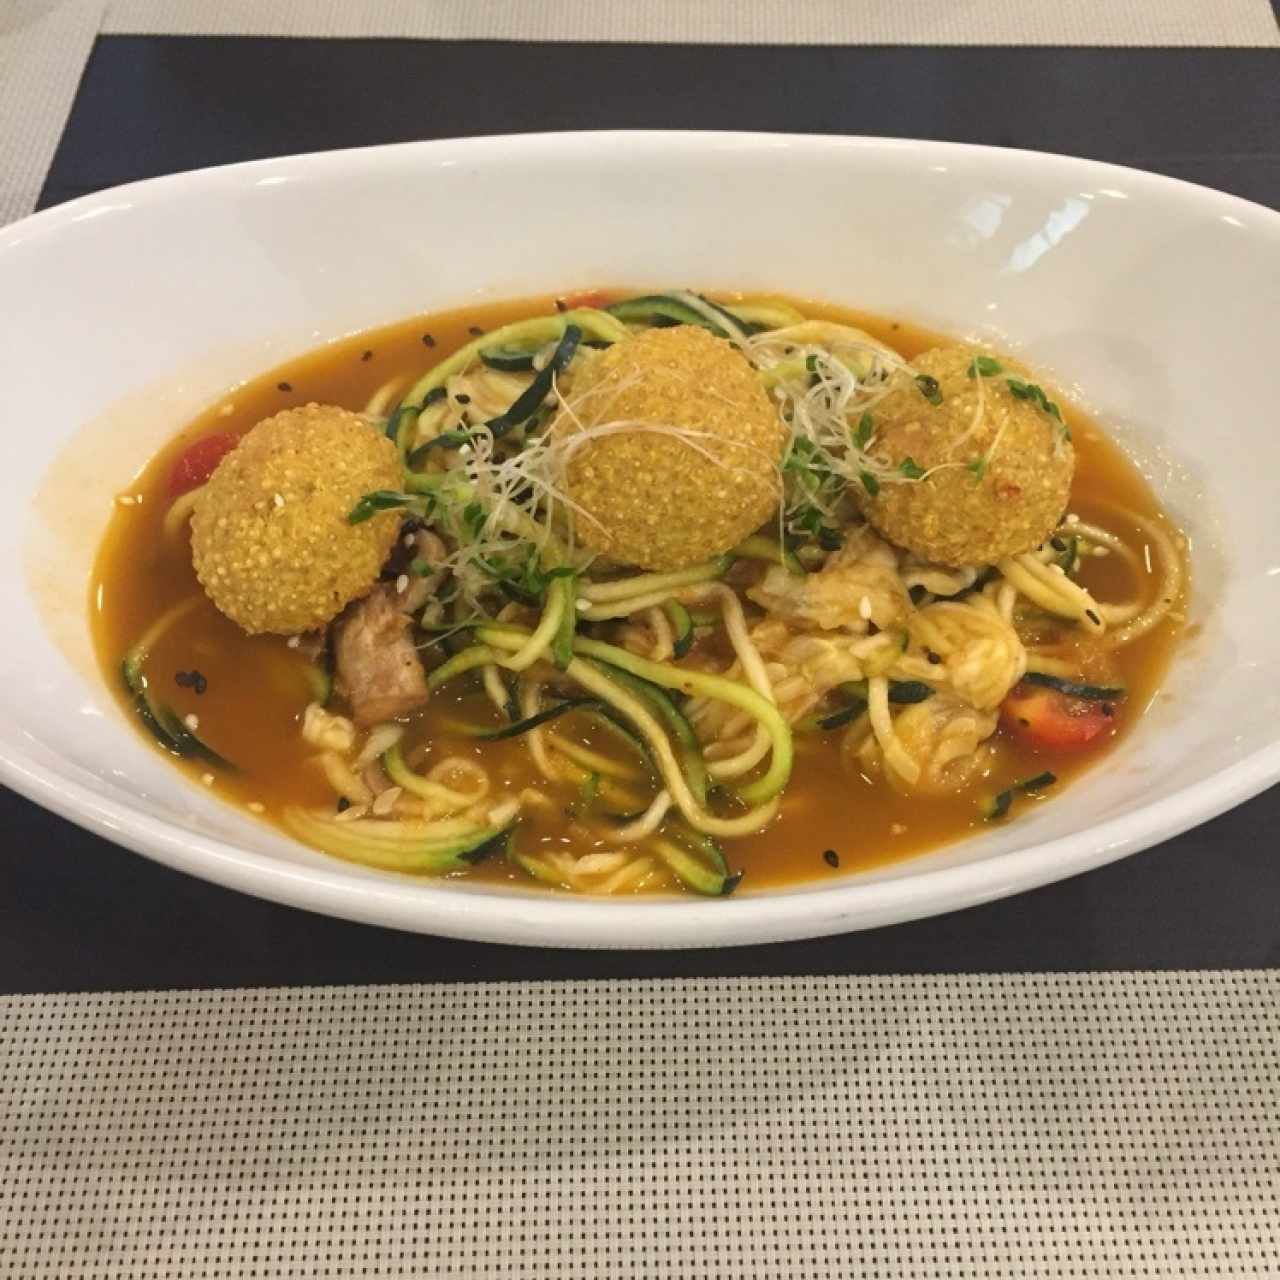 zucchini spaghetti with pollo and quinoa balls